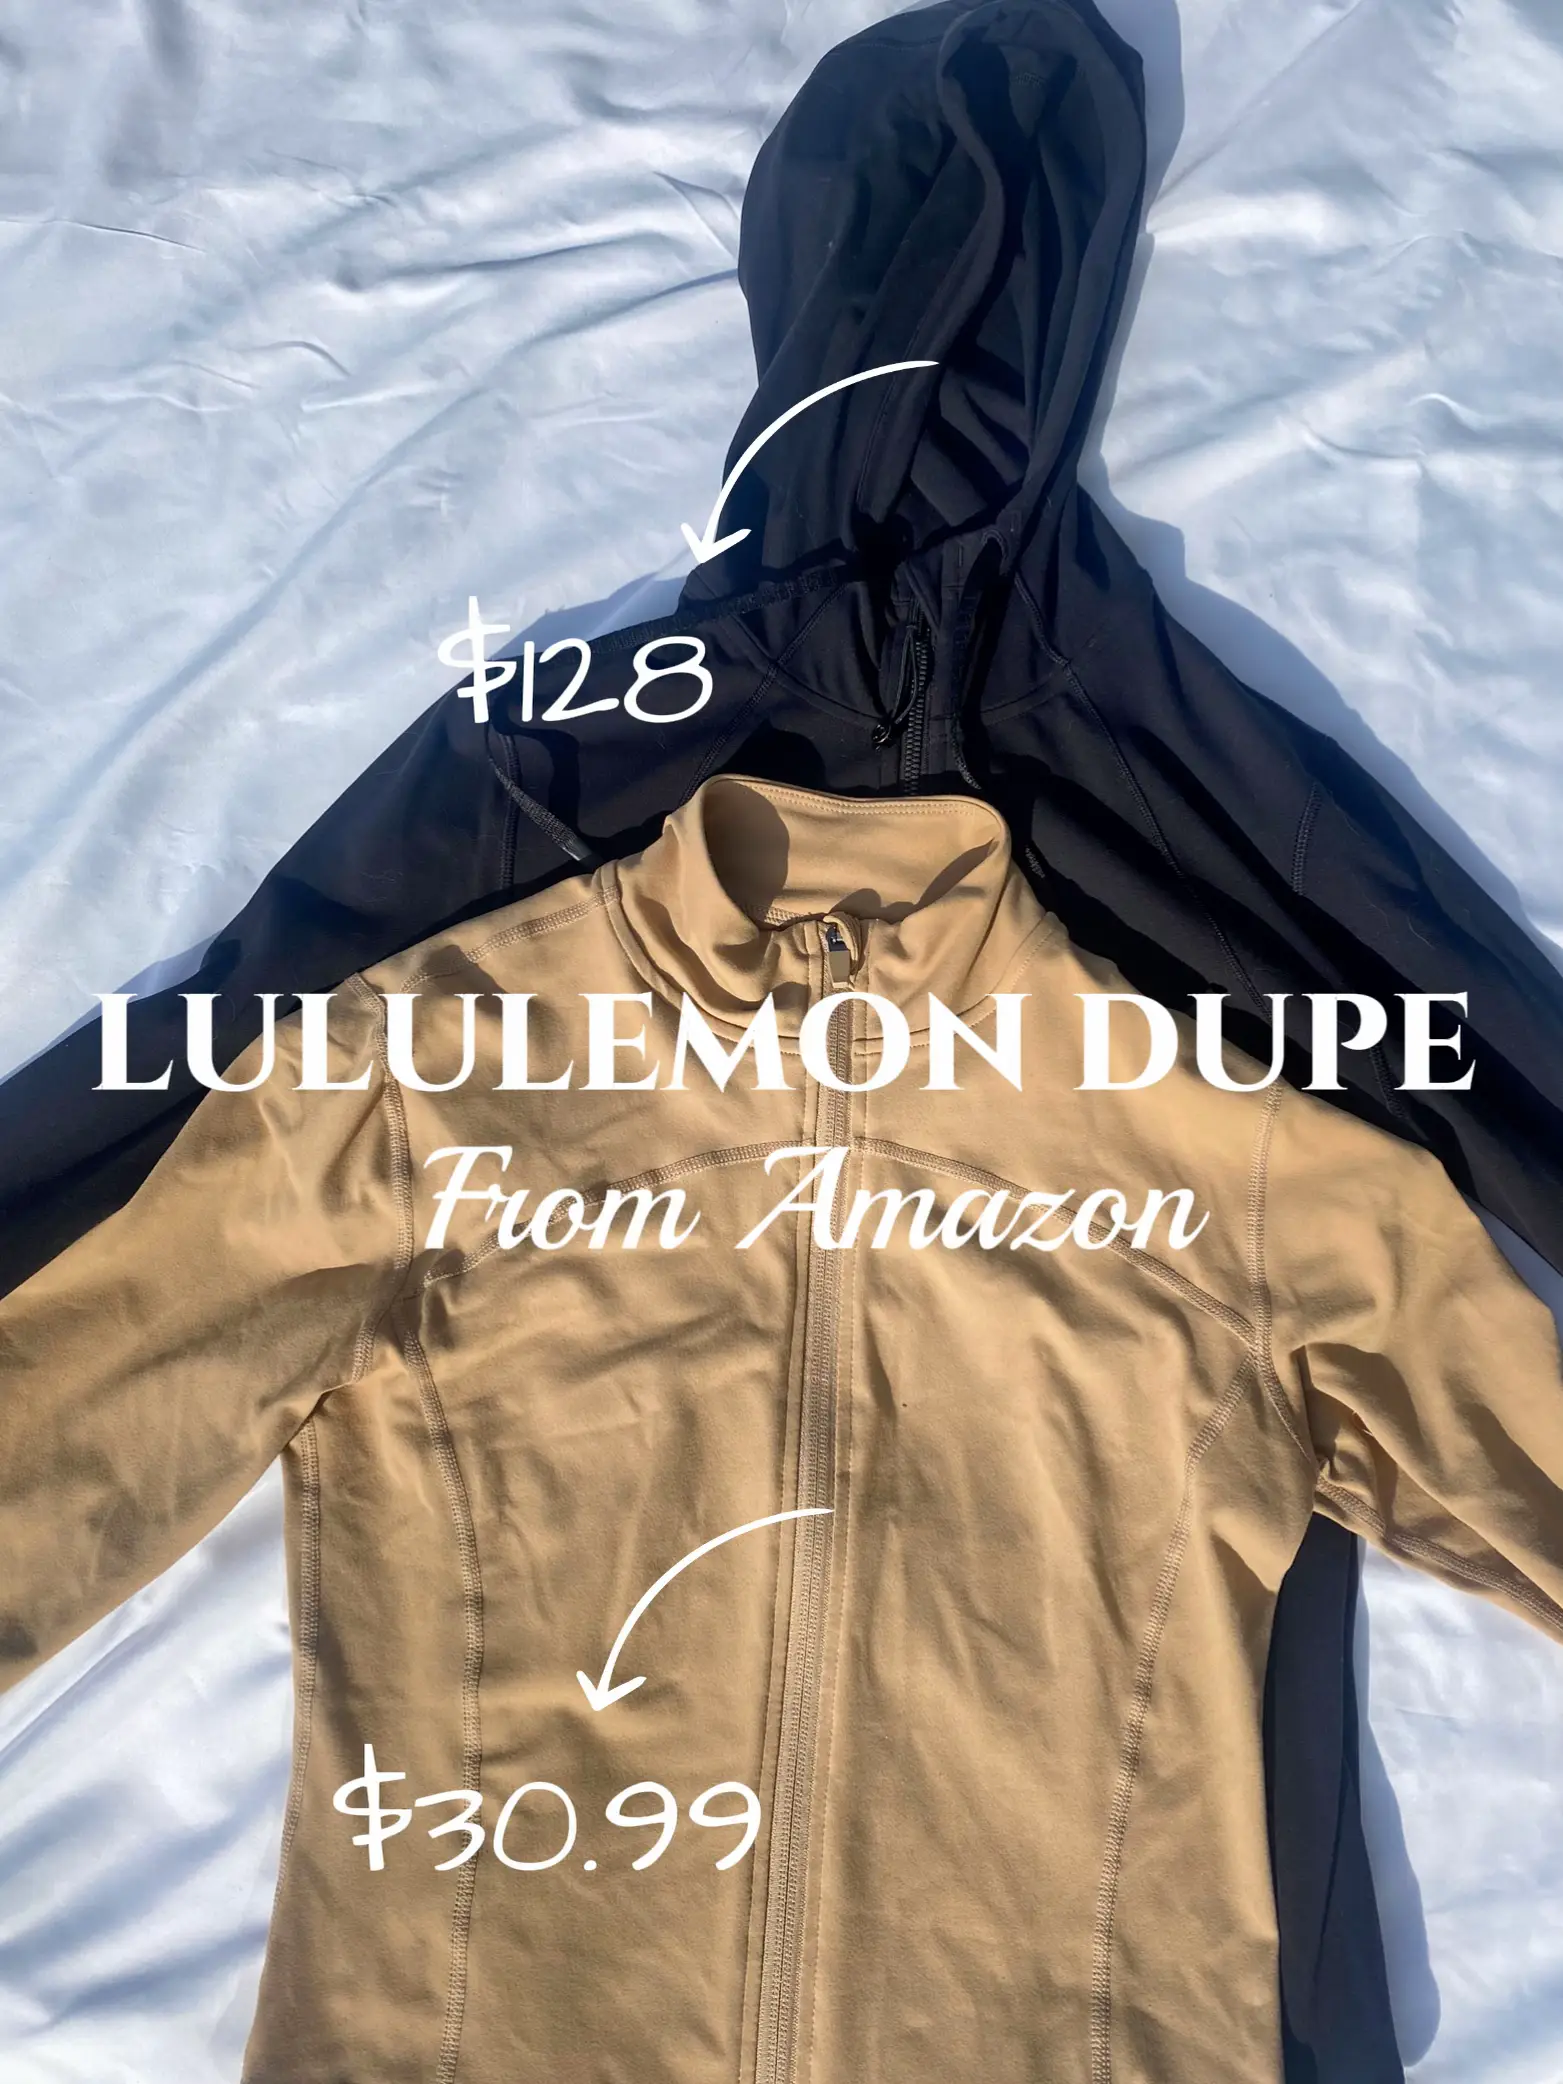 The best  lululemon softstream pants! 🔗 on amzn under “INSPIRED